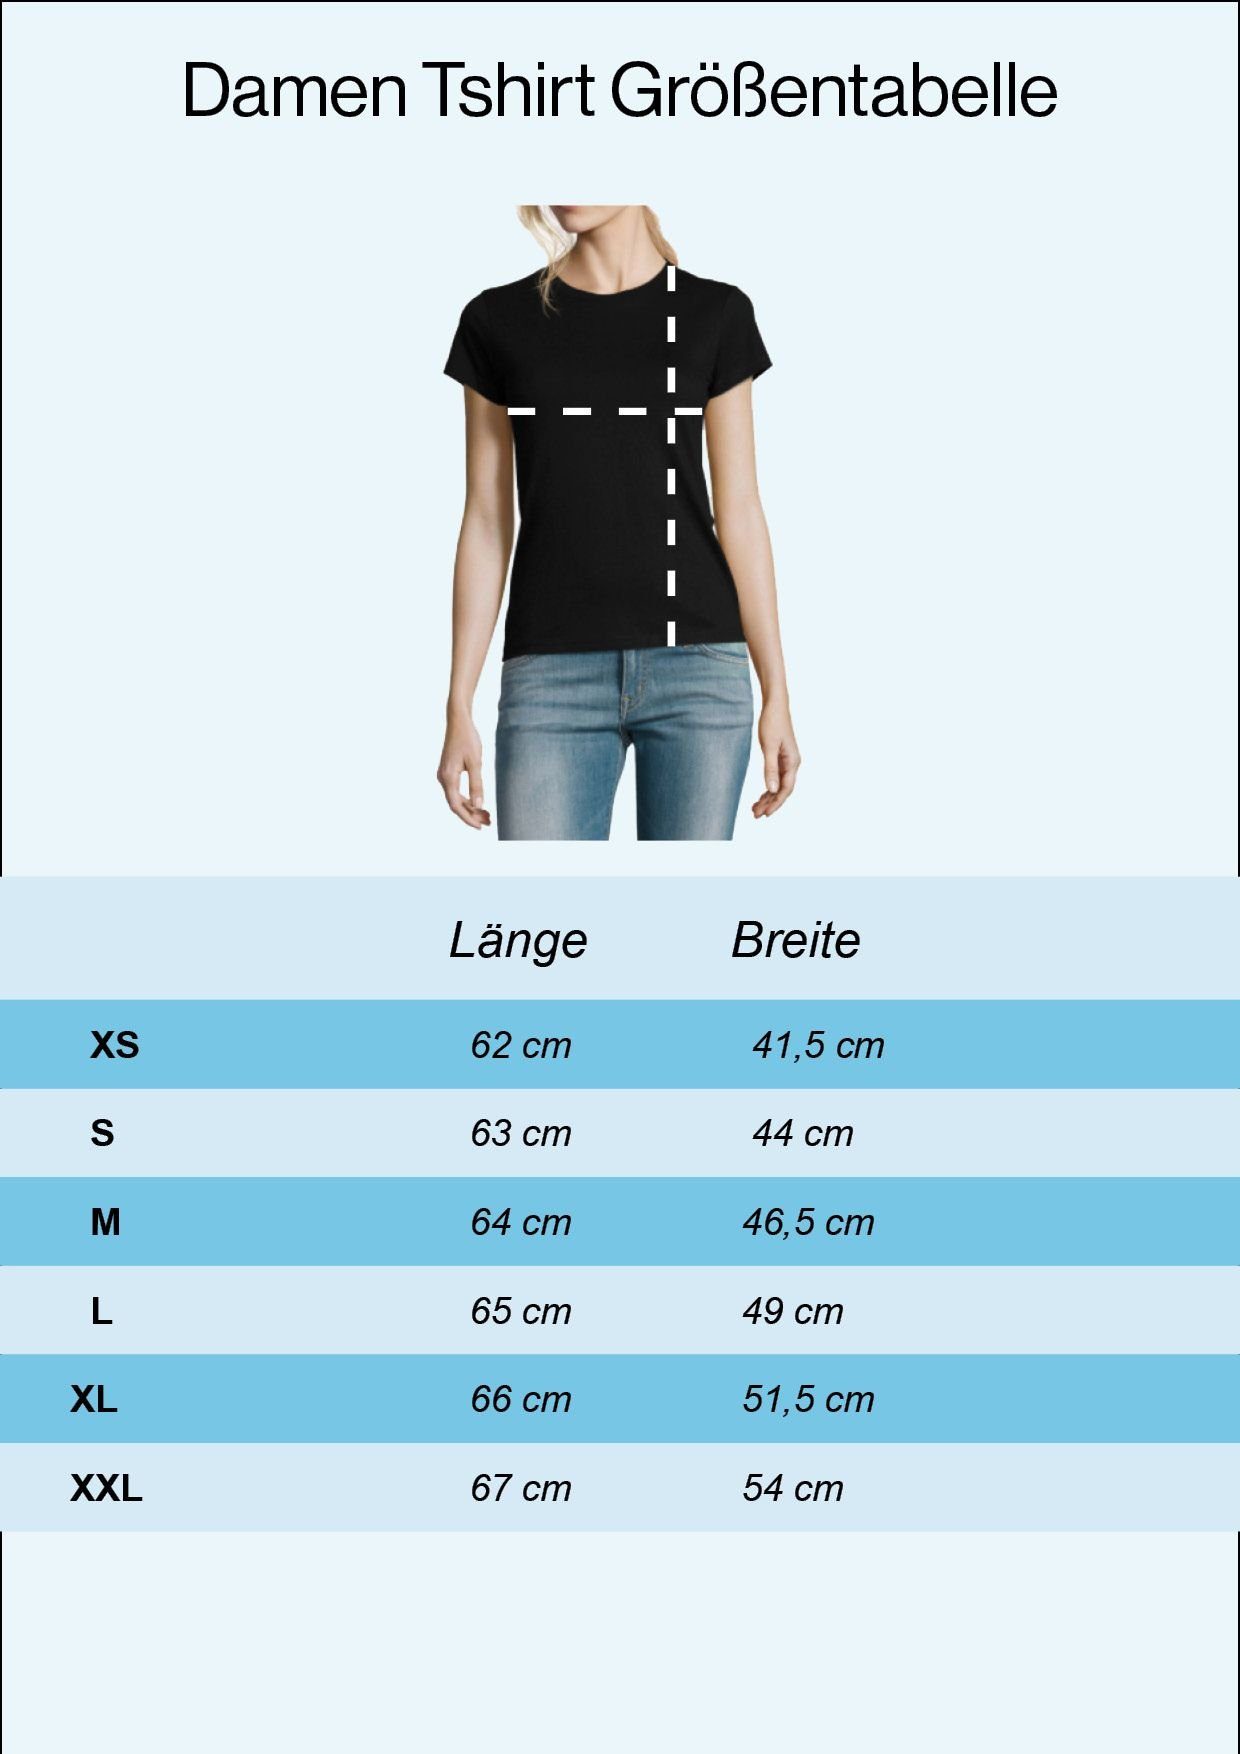 Weiss Sumsi Shirt modischem Po Youth T-Shirt heißt Optimismus Damen Print Designz Mit umgekehrt Mit